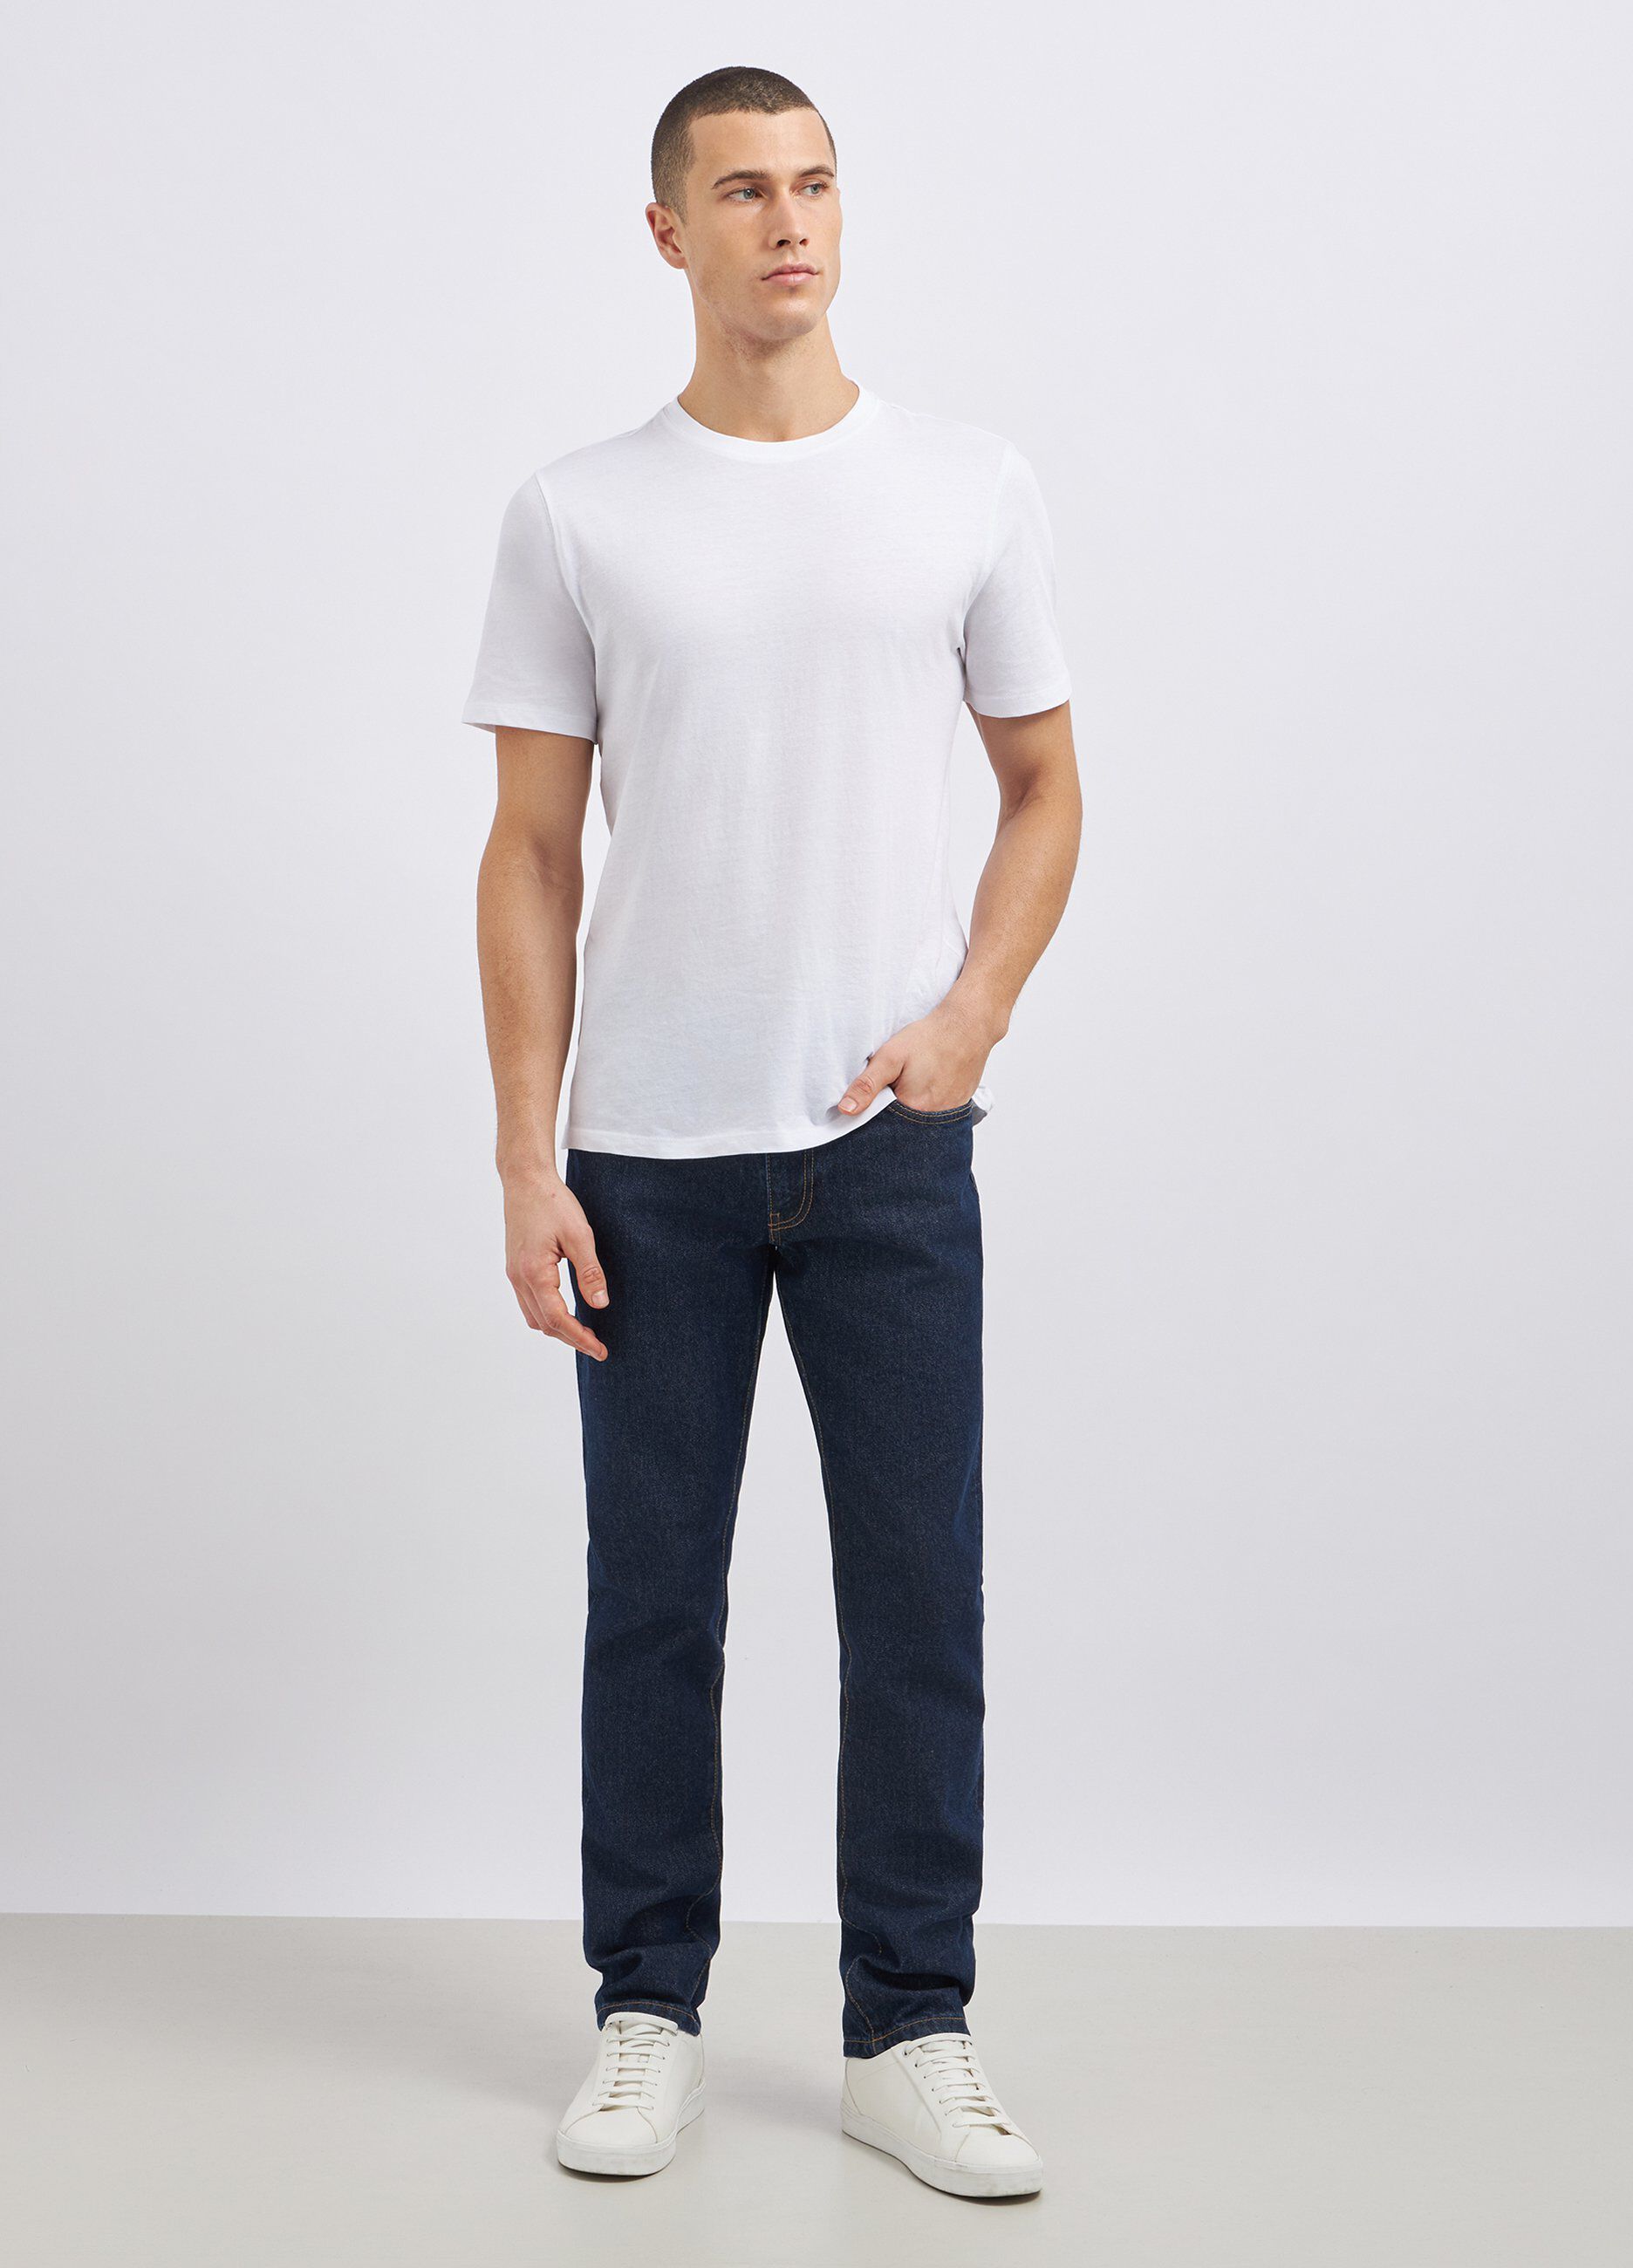 Jeans modello 5 tasche in puro cotone uomo_0